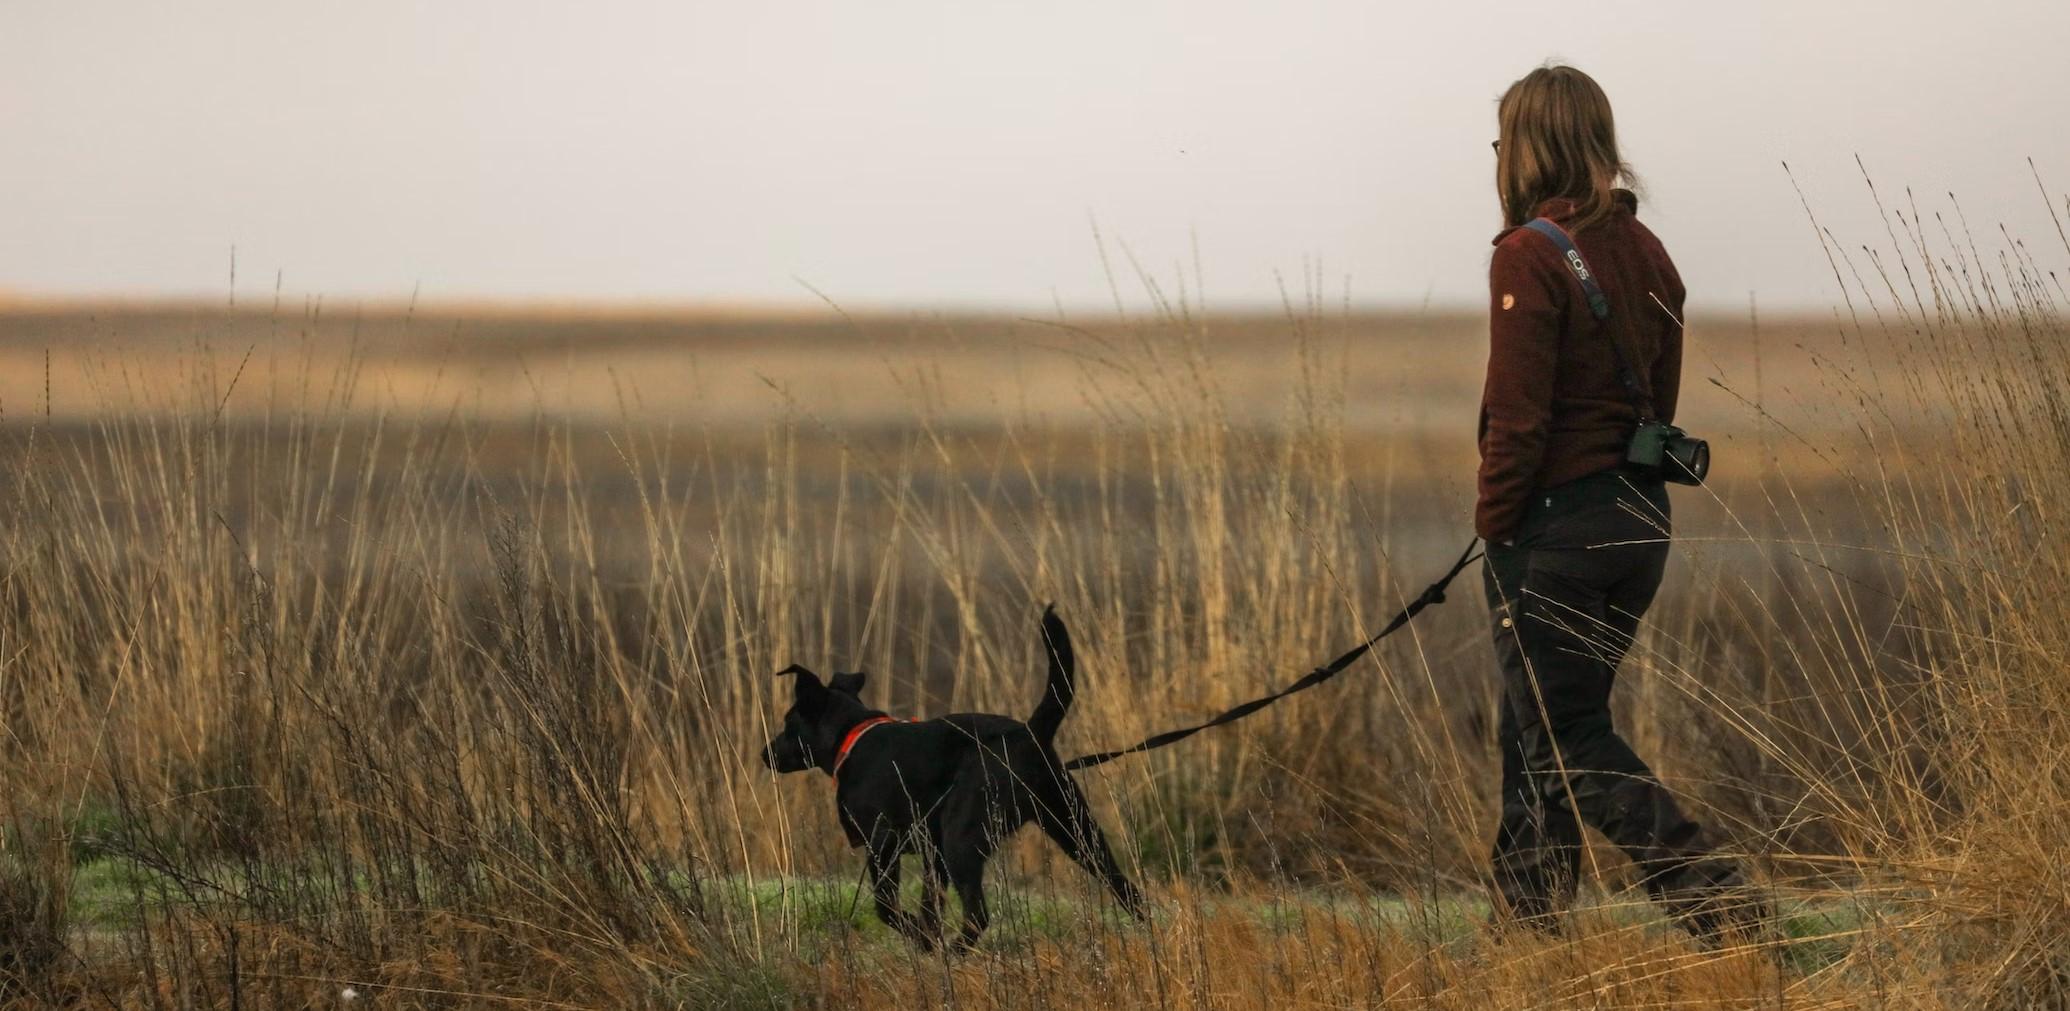  Woman walking a dog in a field 